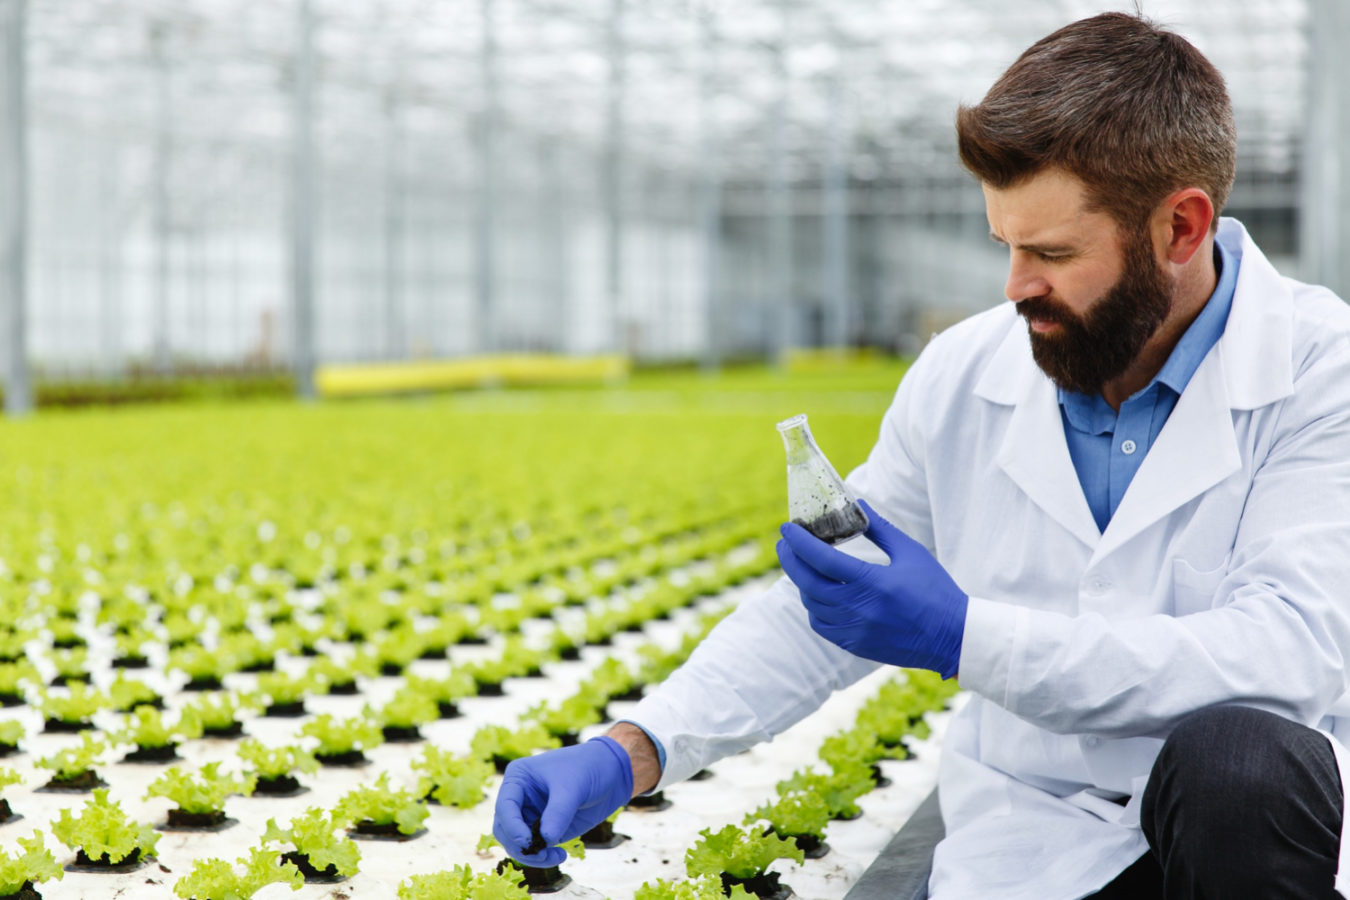 imagem mostra um homem de jaleco em uma estufa de plantas sobre um artigo sobre engenharia agronômica